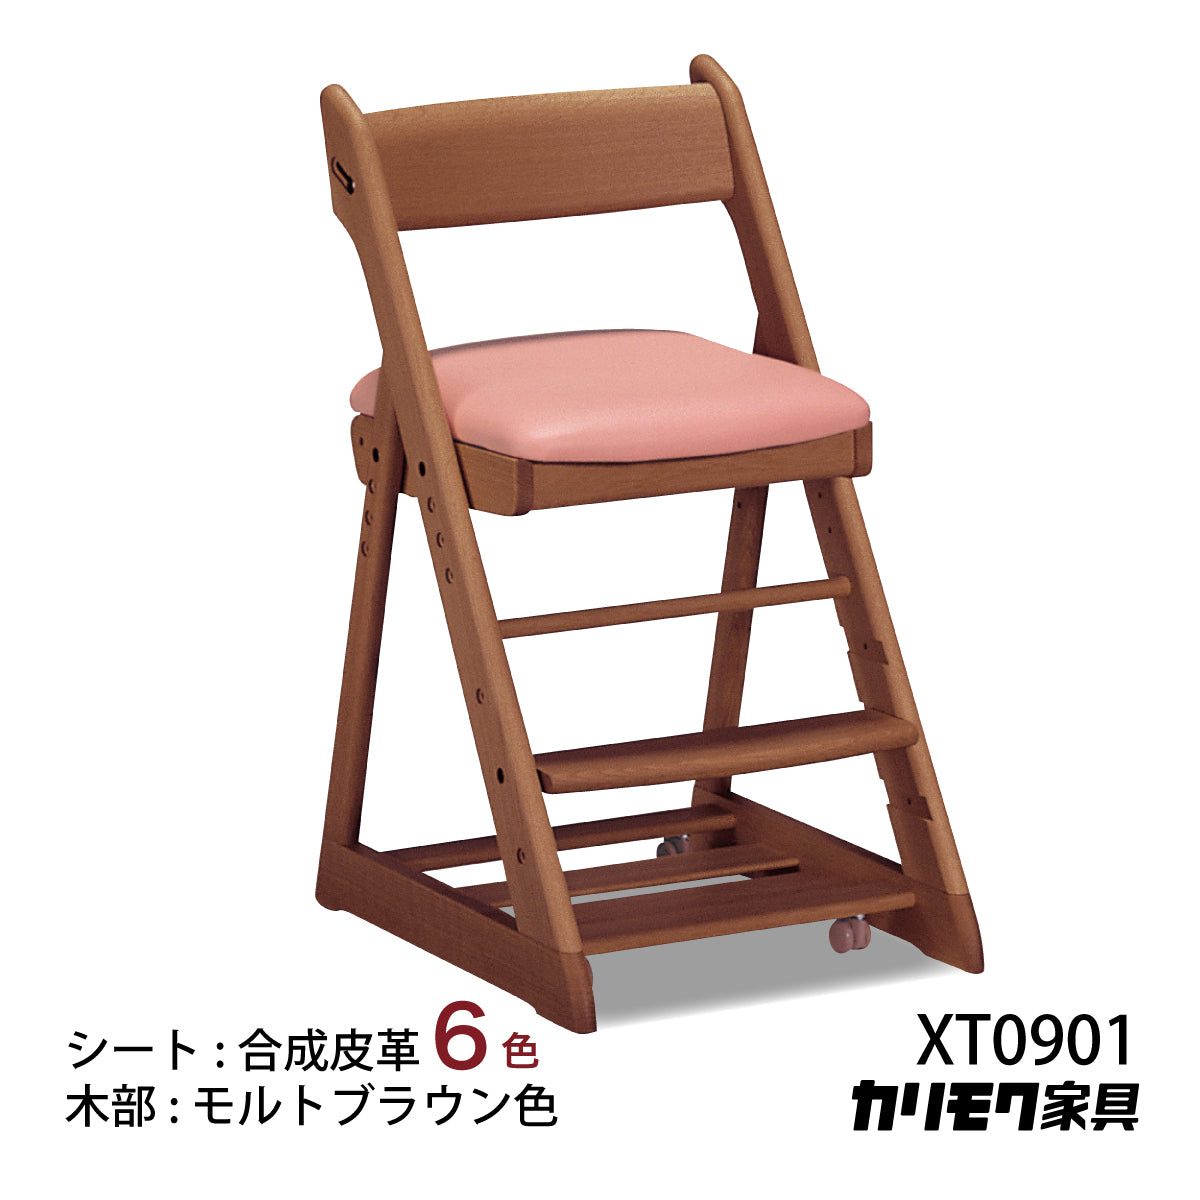 カリモク 学習椅子 XT0901 モルトブラウン色 オーク材 デスクチェア